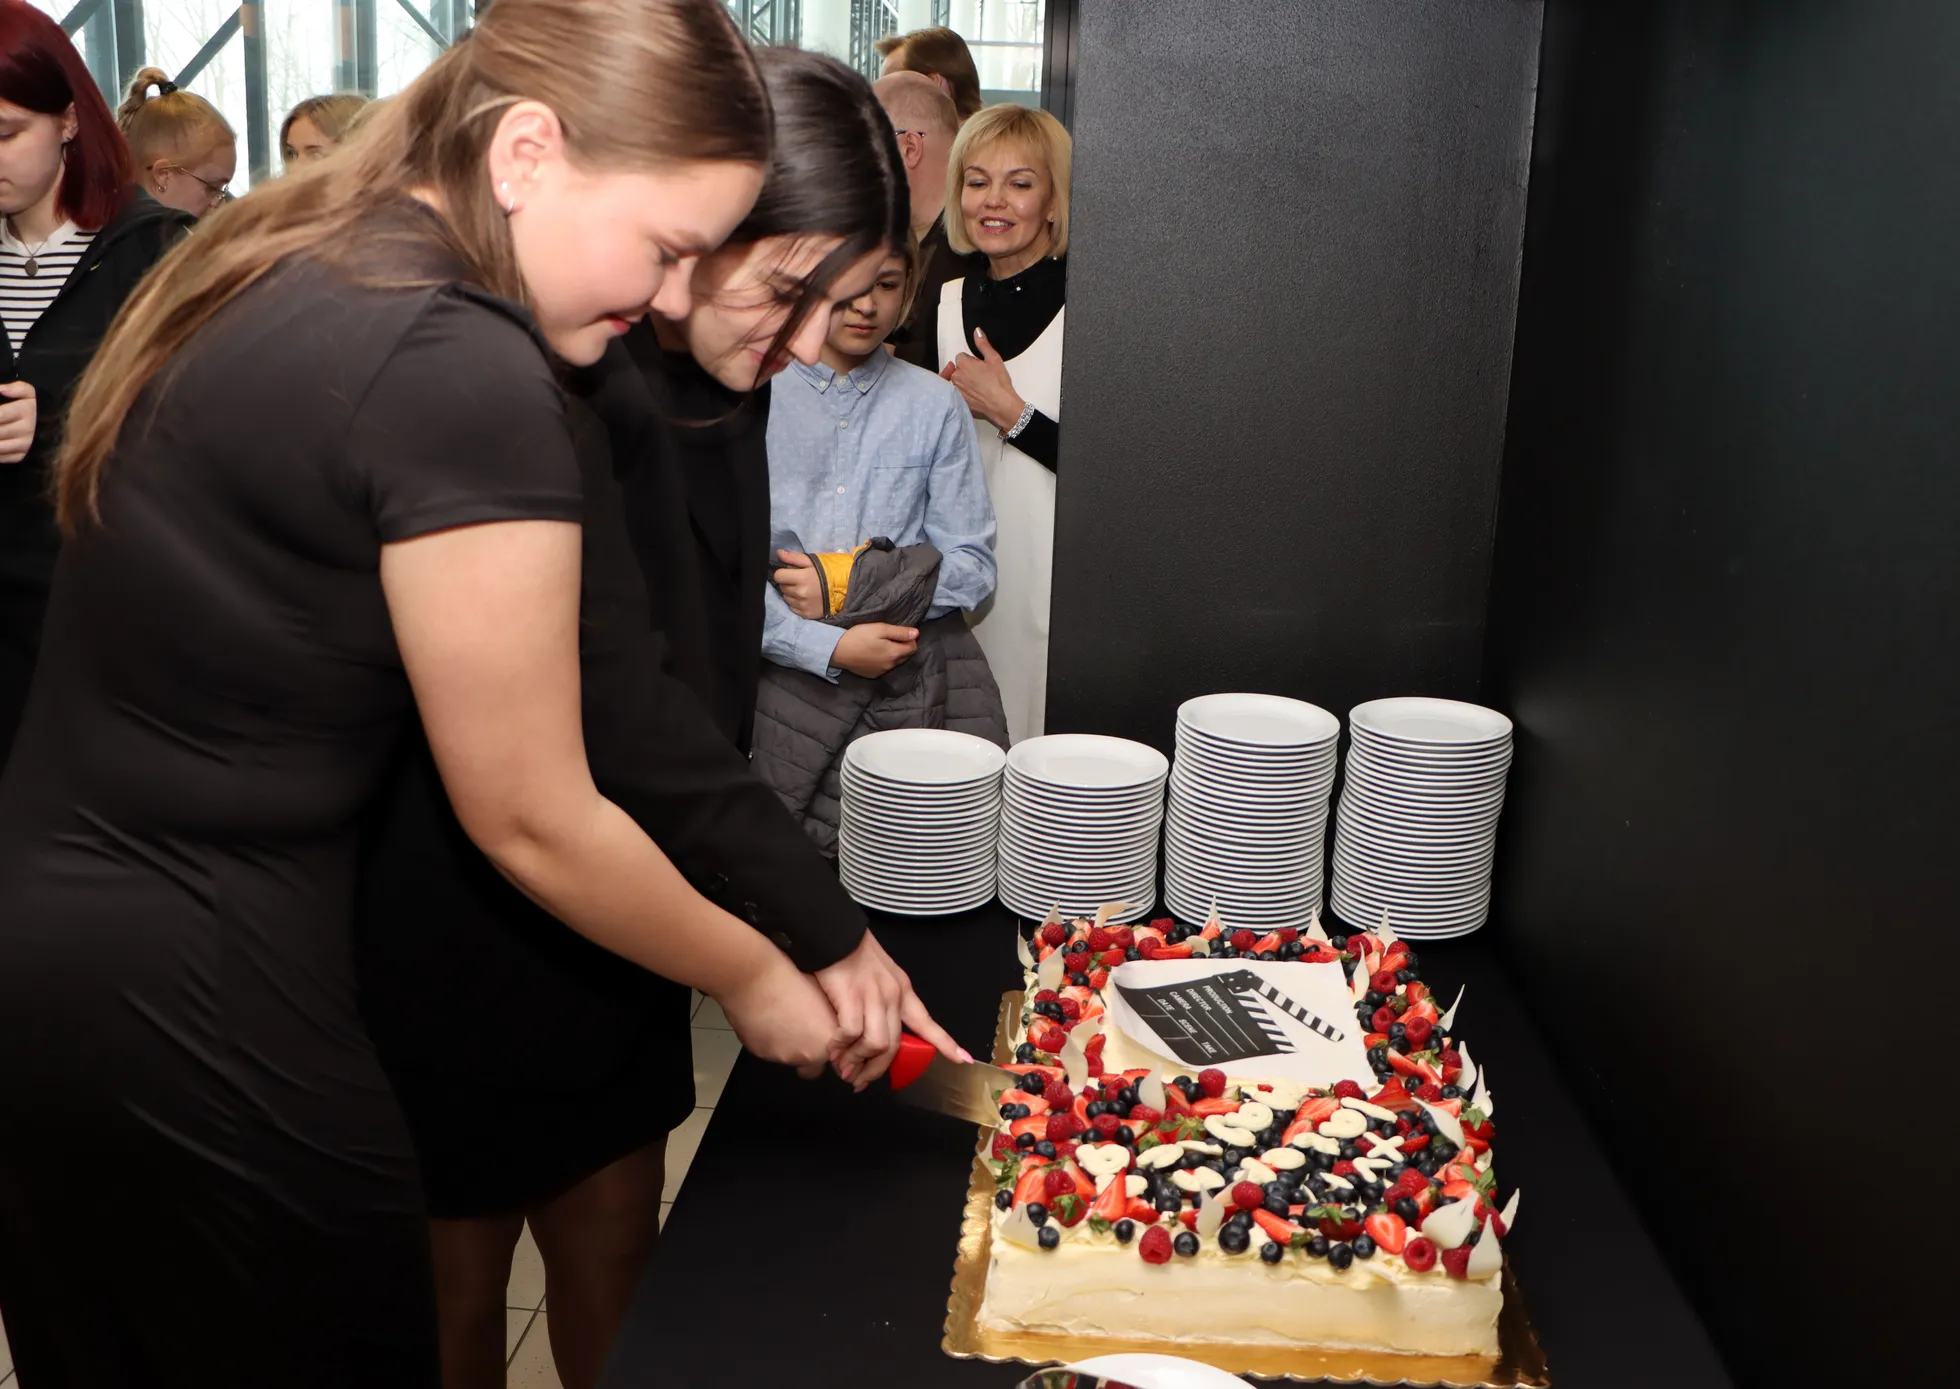 Праздничный торт доверили разрезать обладательнице Гран-при Анне Марии Вахер и ее коллегам из студии "KuuTV".